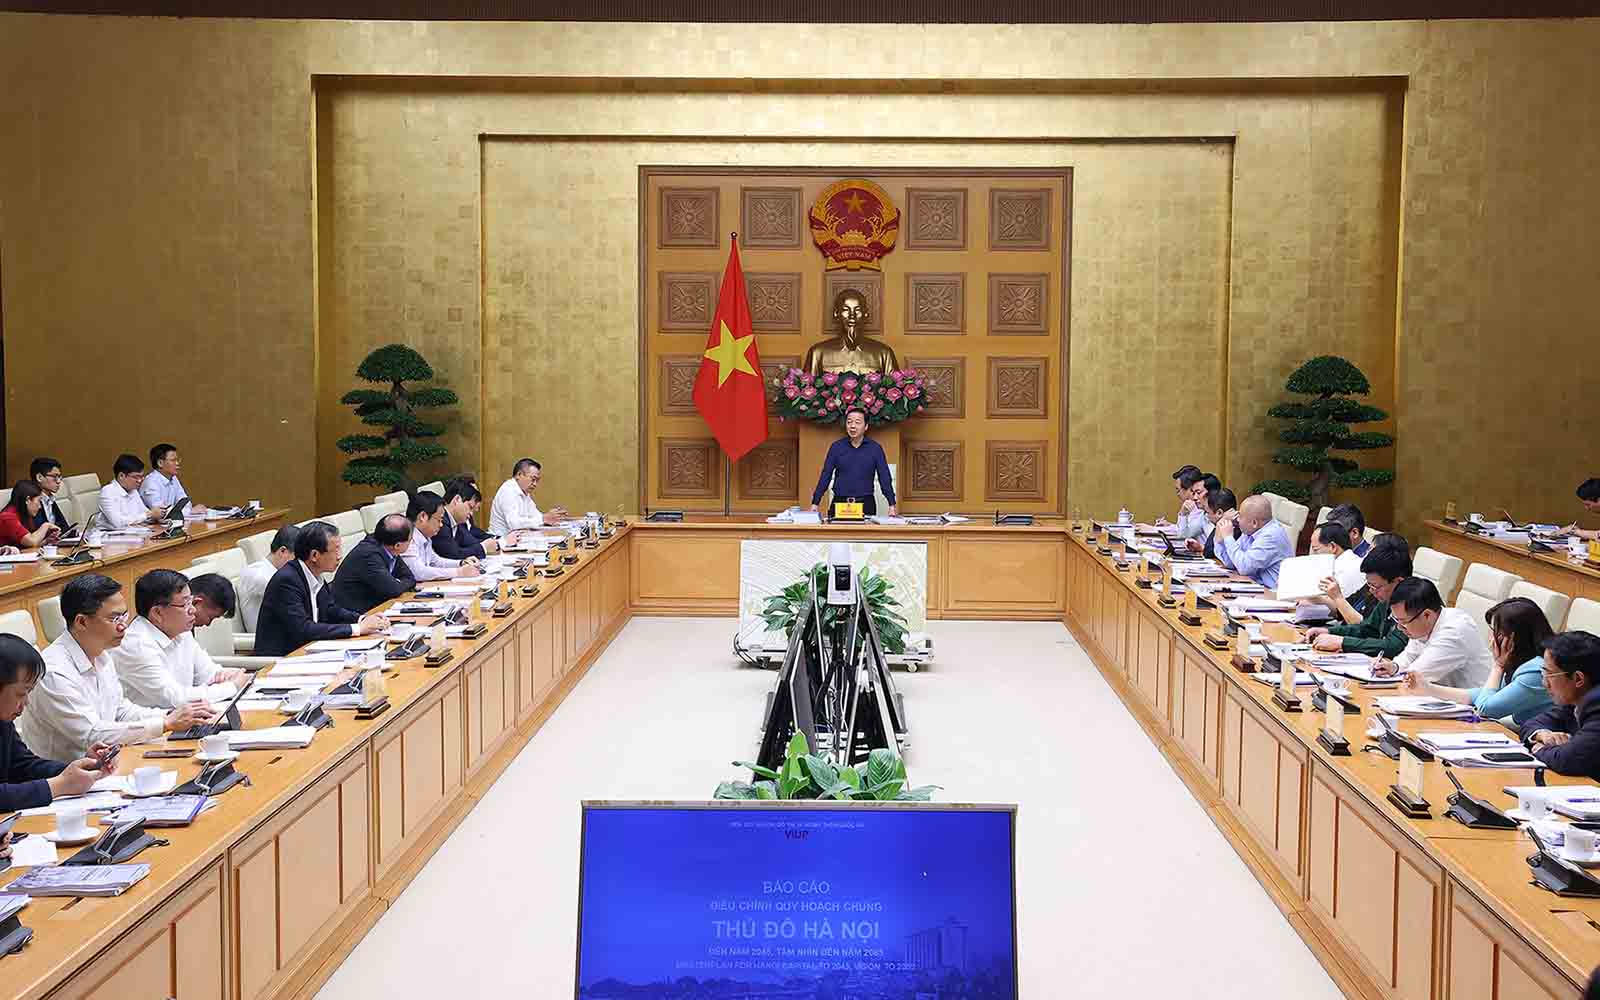 La réunion a entendu le rapport sur l'ajustement de la planification générale de la capitale de Hanoï. Photo de : VGP